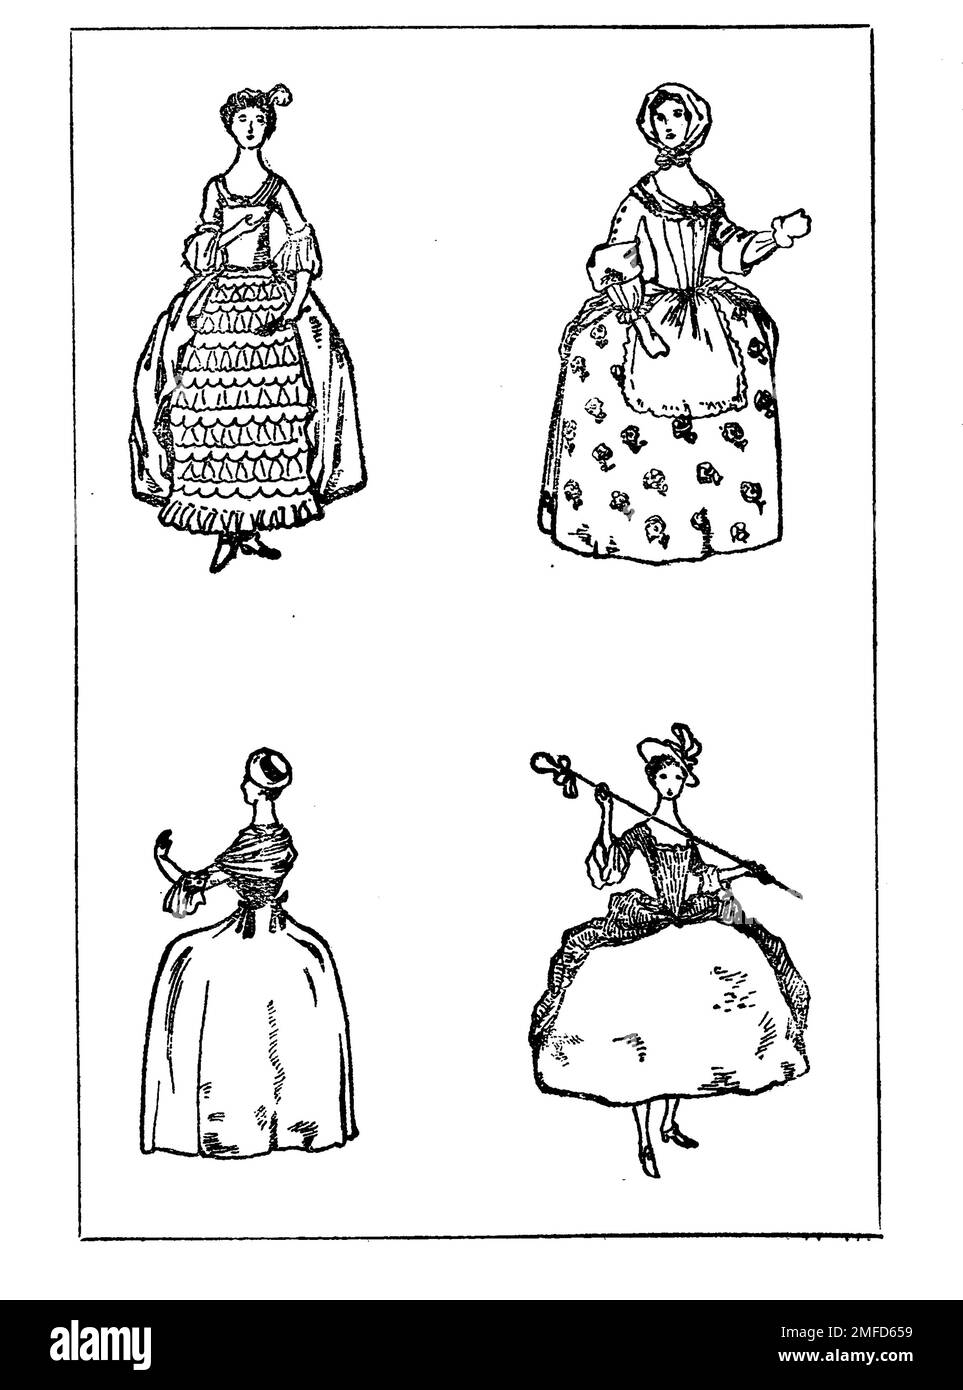 Strichzeichnung von Damenbekleidung während der Herrschaft George II aus dem Buch " English Costume " von Dion Clayton Calthrop, 1878-1937 Publikationsdatum 1907 Publisher London, A. & C. Black Stockfoto